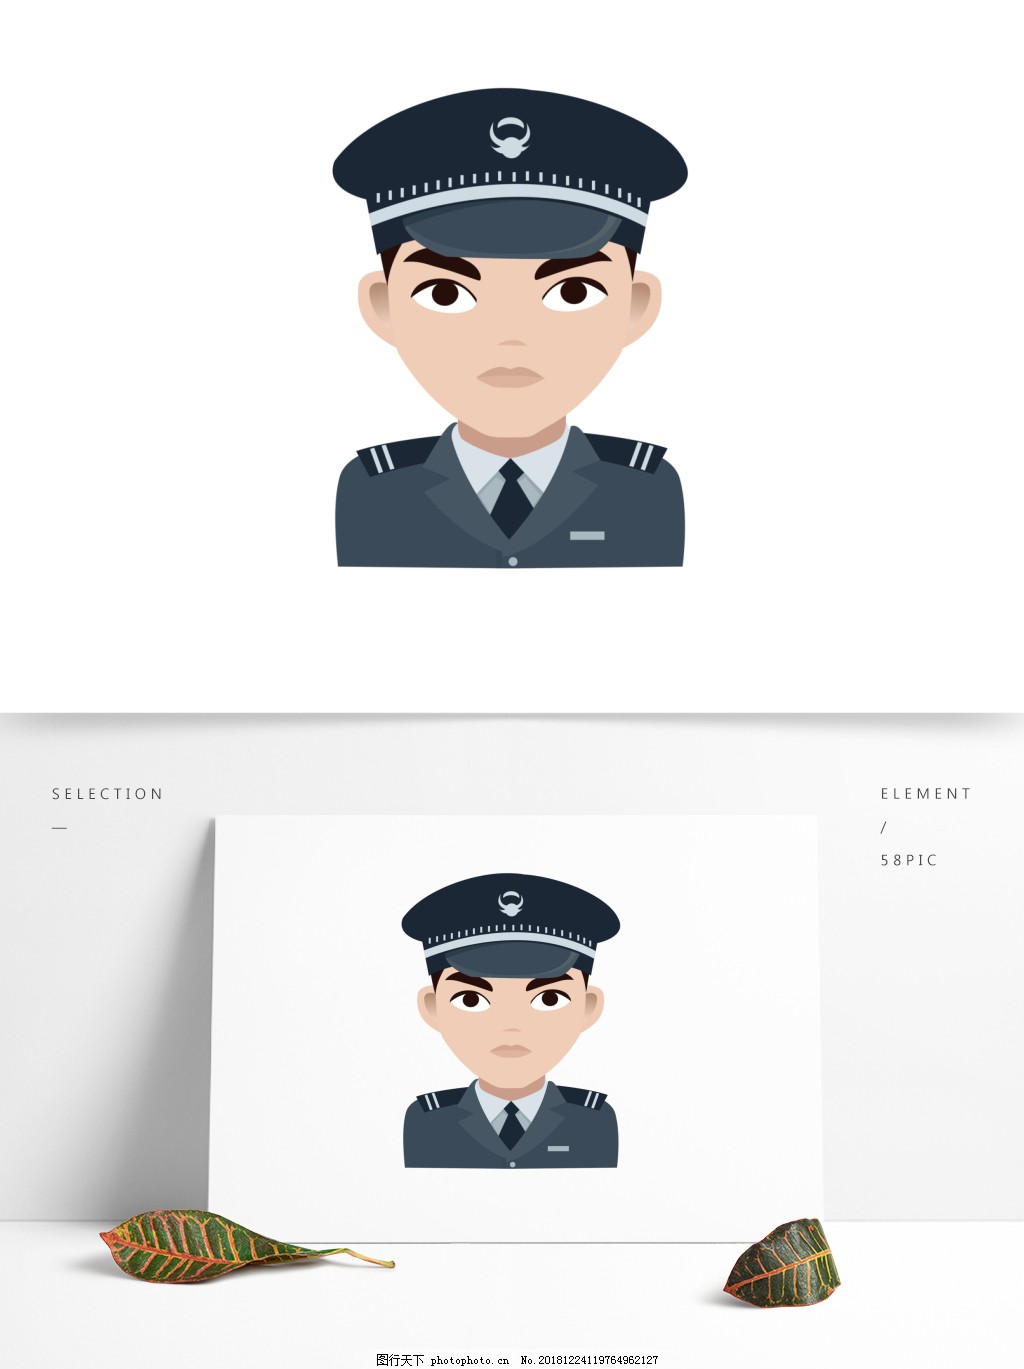 安保警察形象插画 - 模板 - Canva可画